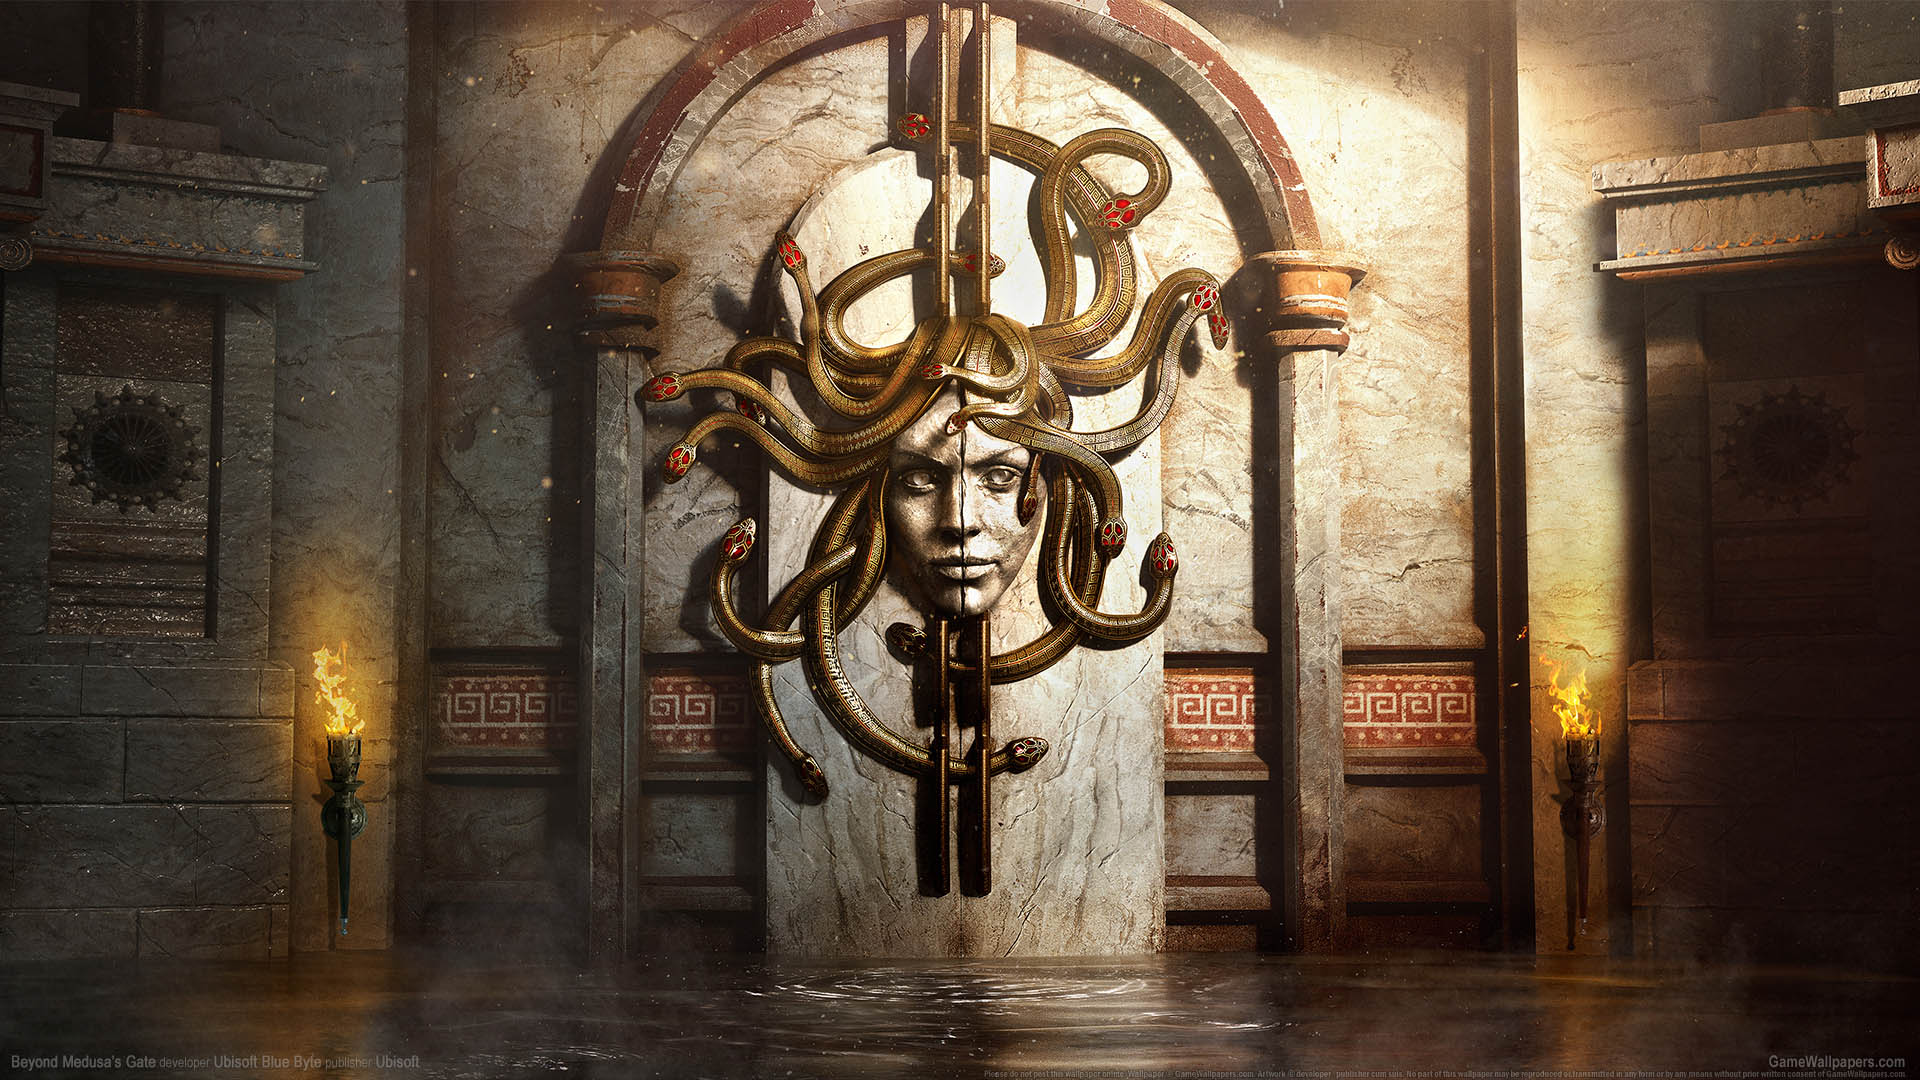 Beyond Medusa's Gate fond d'cran 01 1920x1080